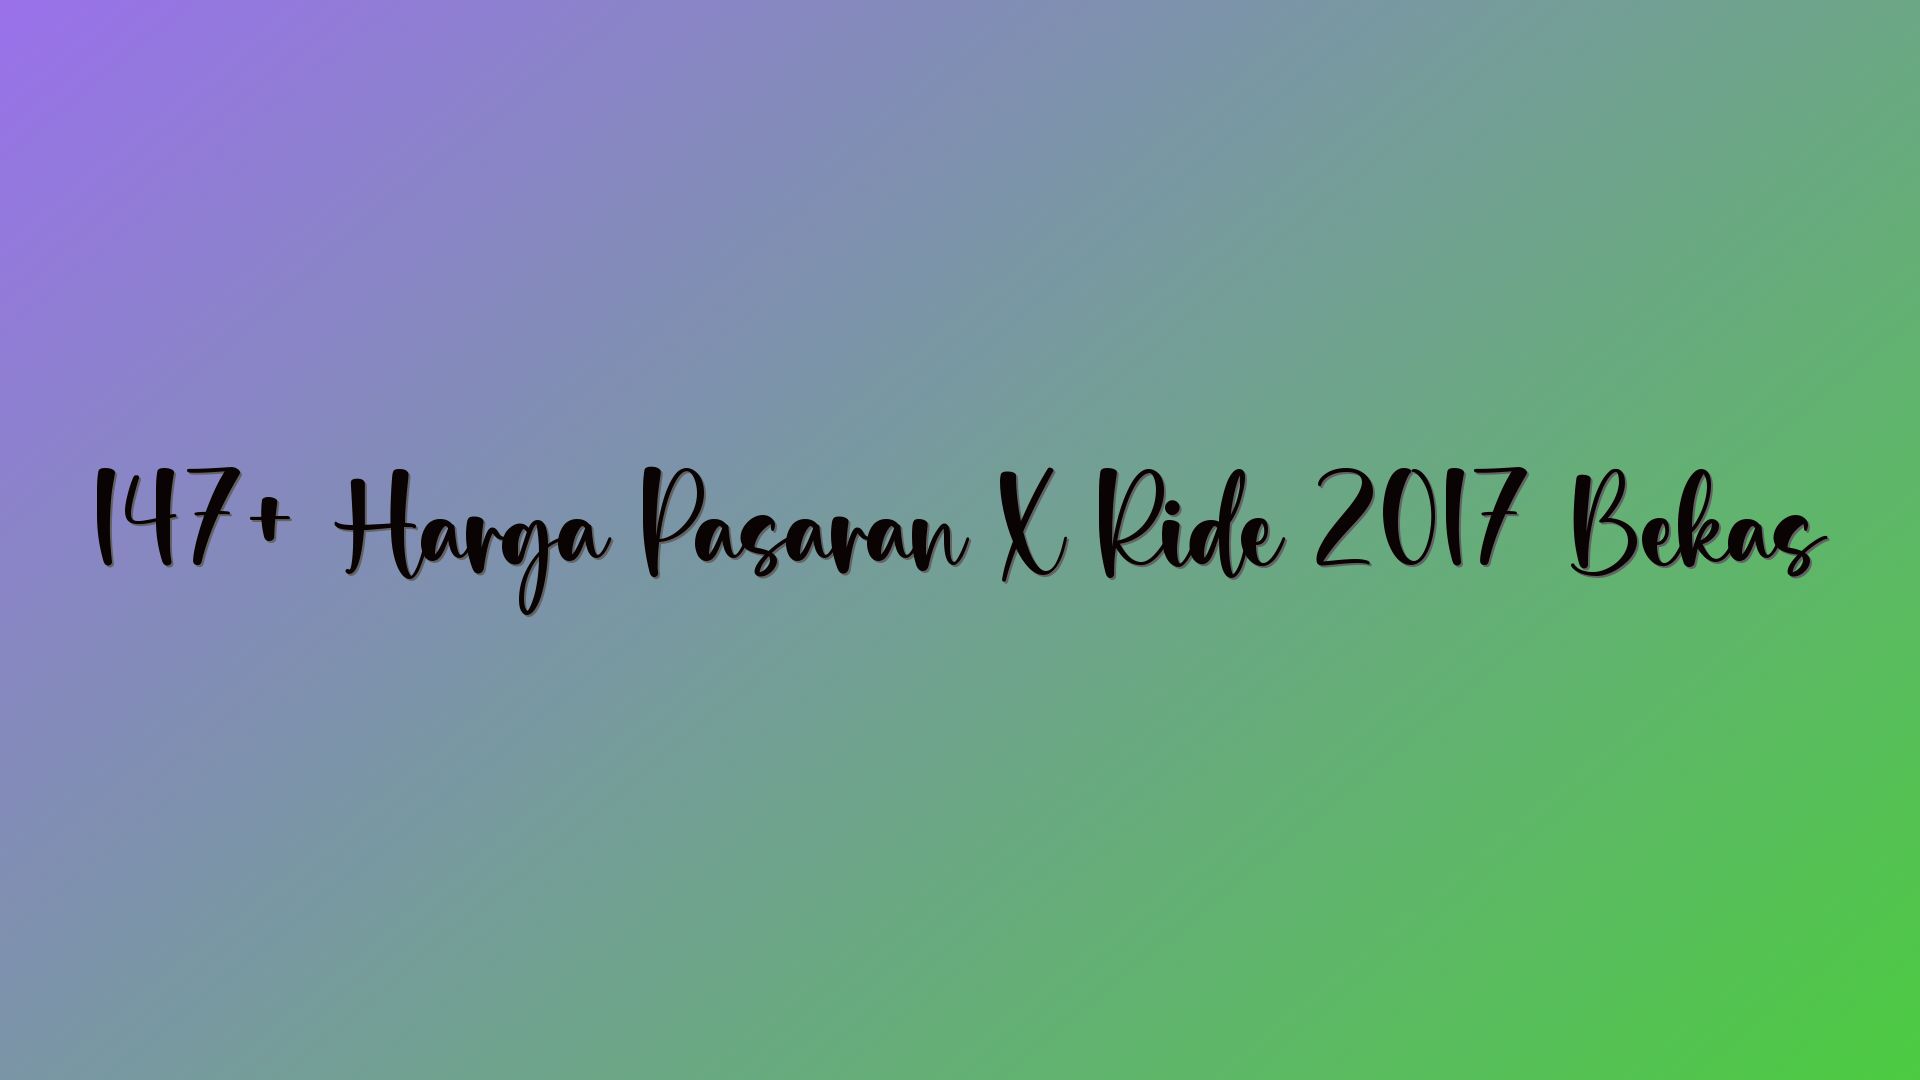 147+ Harga Pasaran X Ride 2017 Bekas